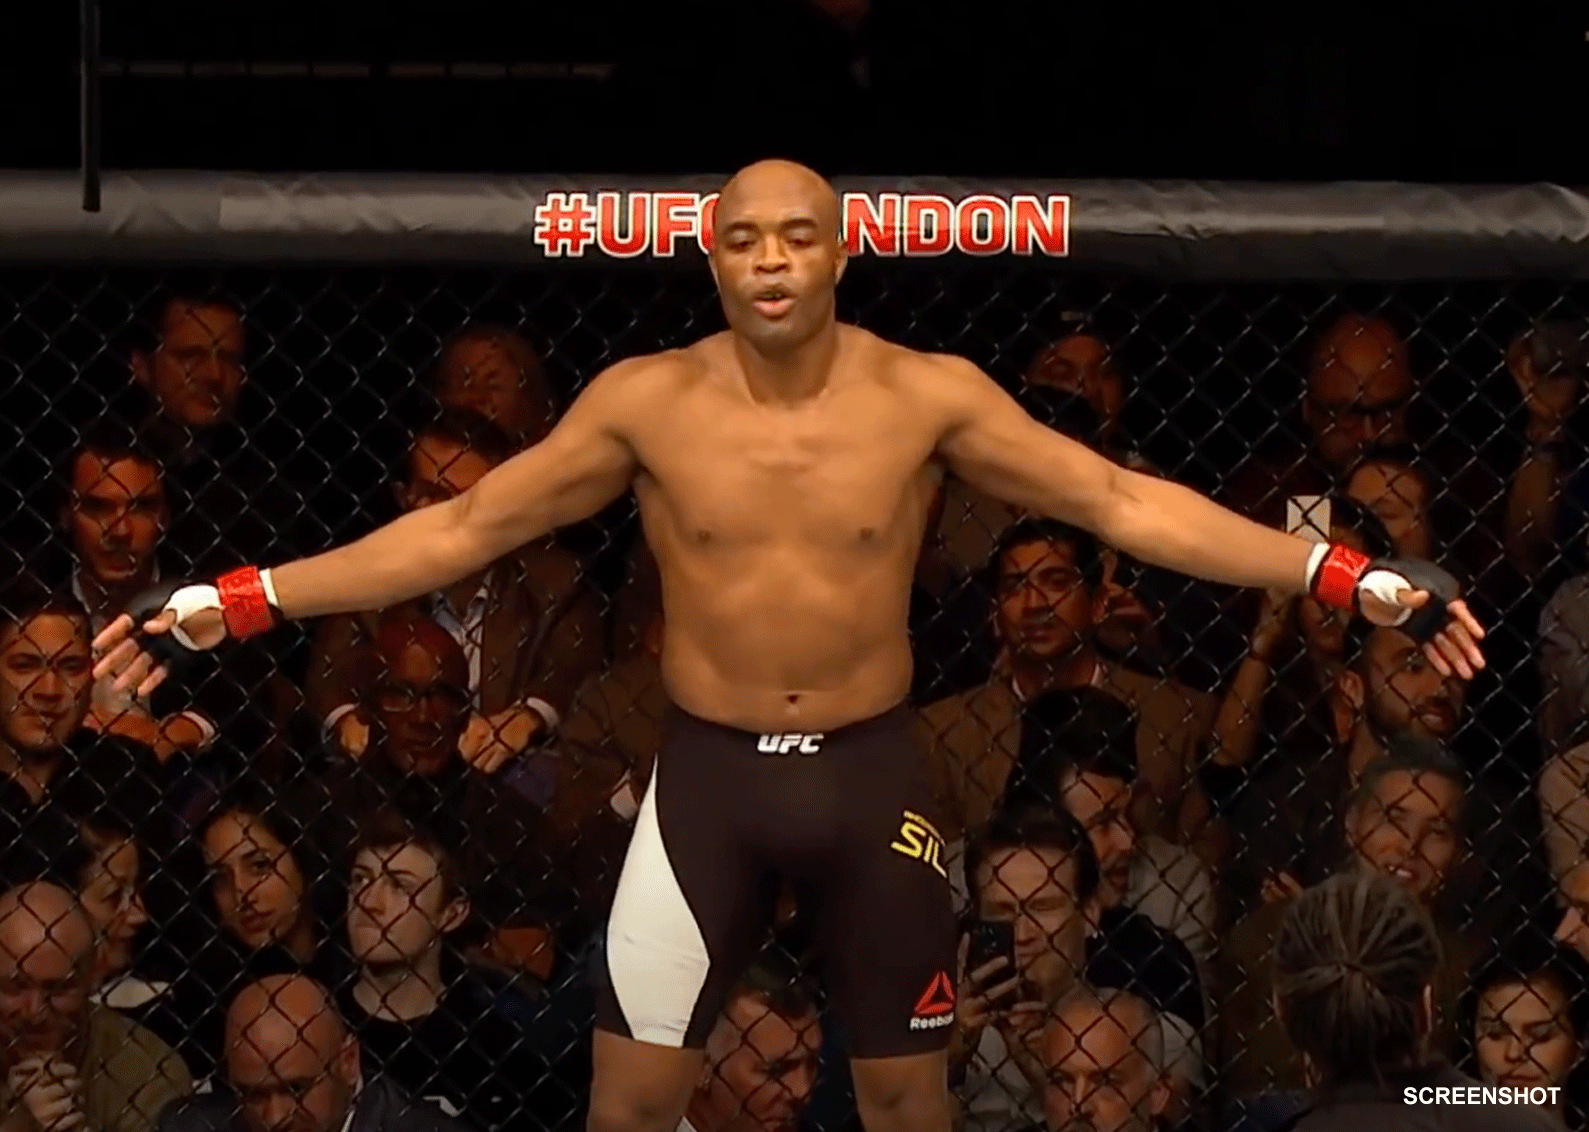 MMA-legende Anderson Silva haalt stevig uit naar de UFC en Dana White